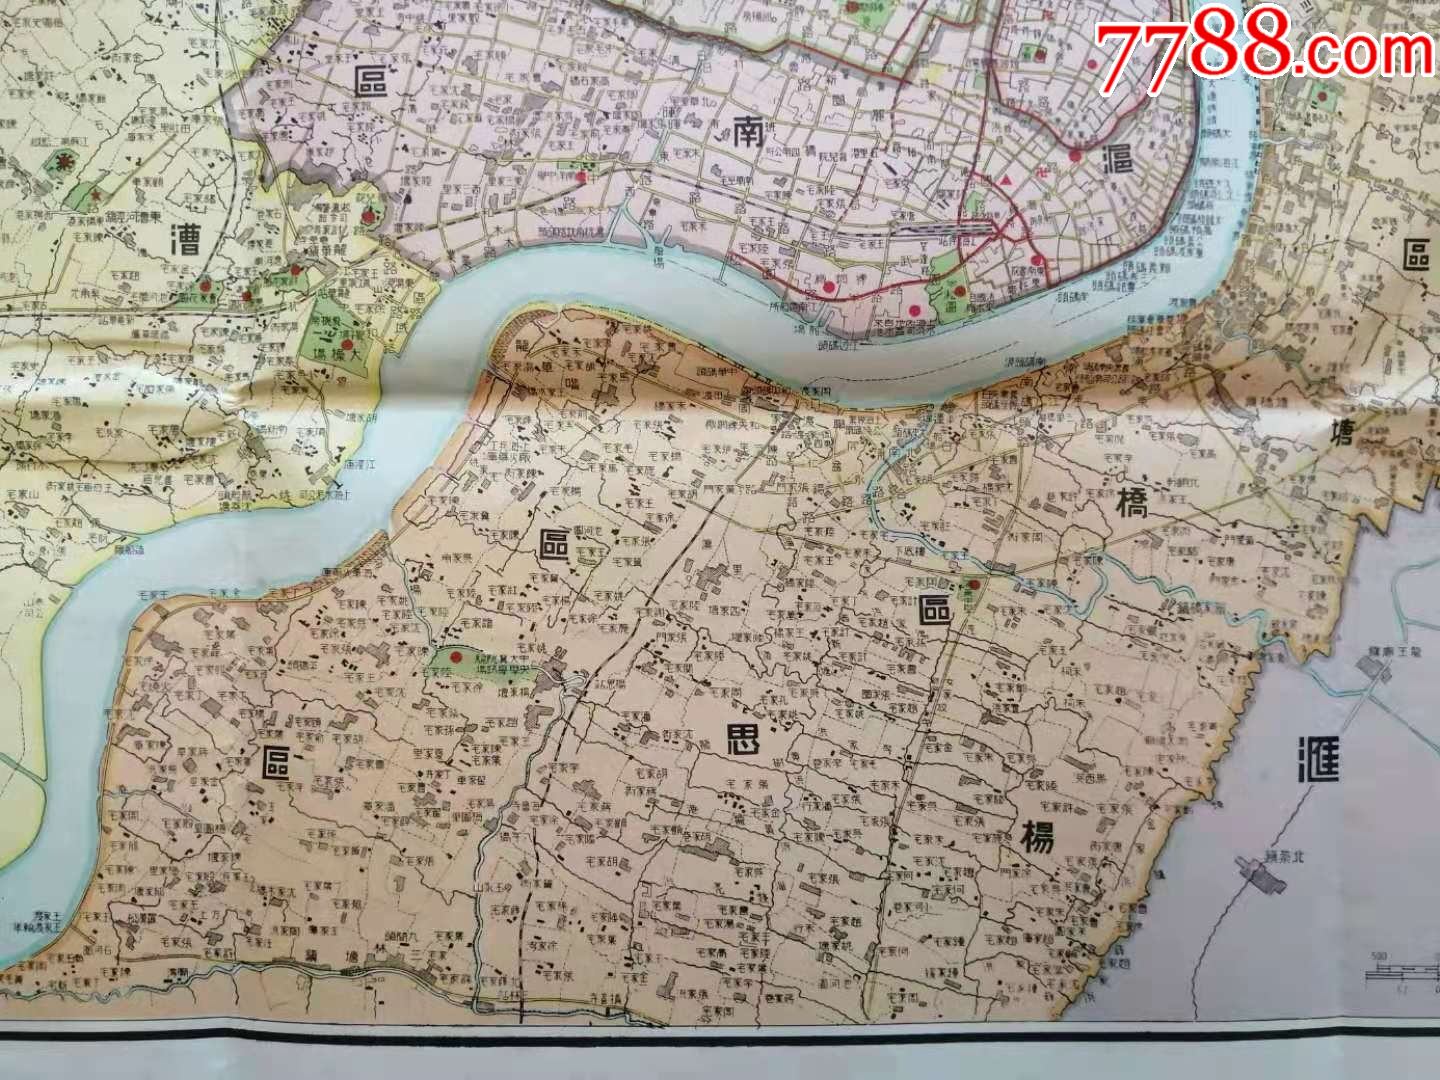 《大上海新地图》,尺幅大(110cm*80cm)品相好,绘制精美,稀见